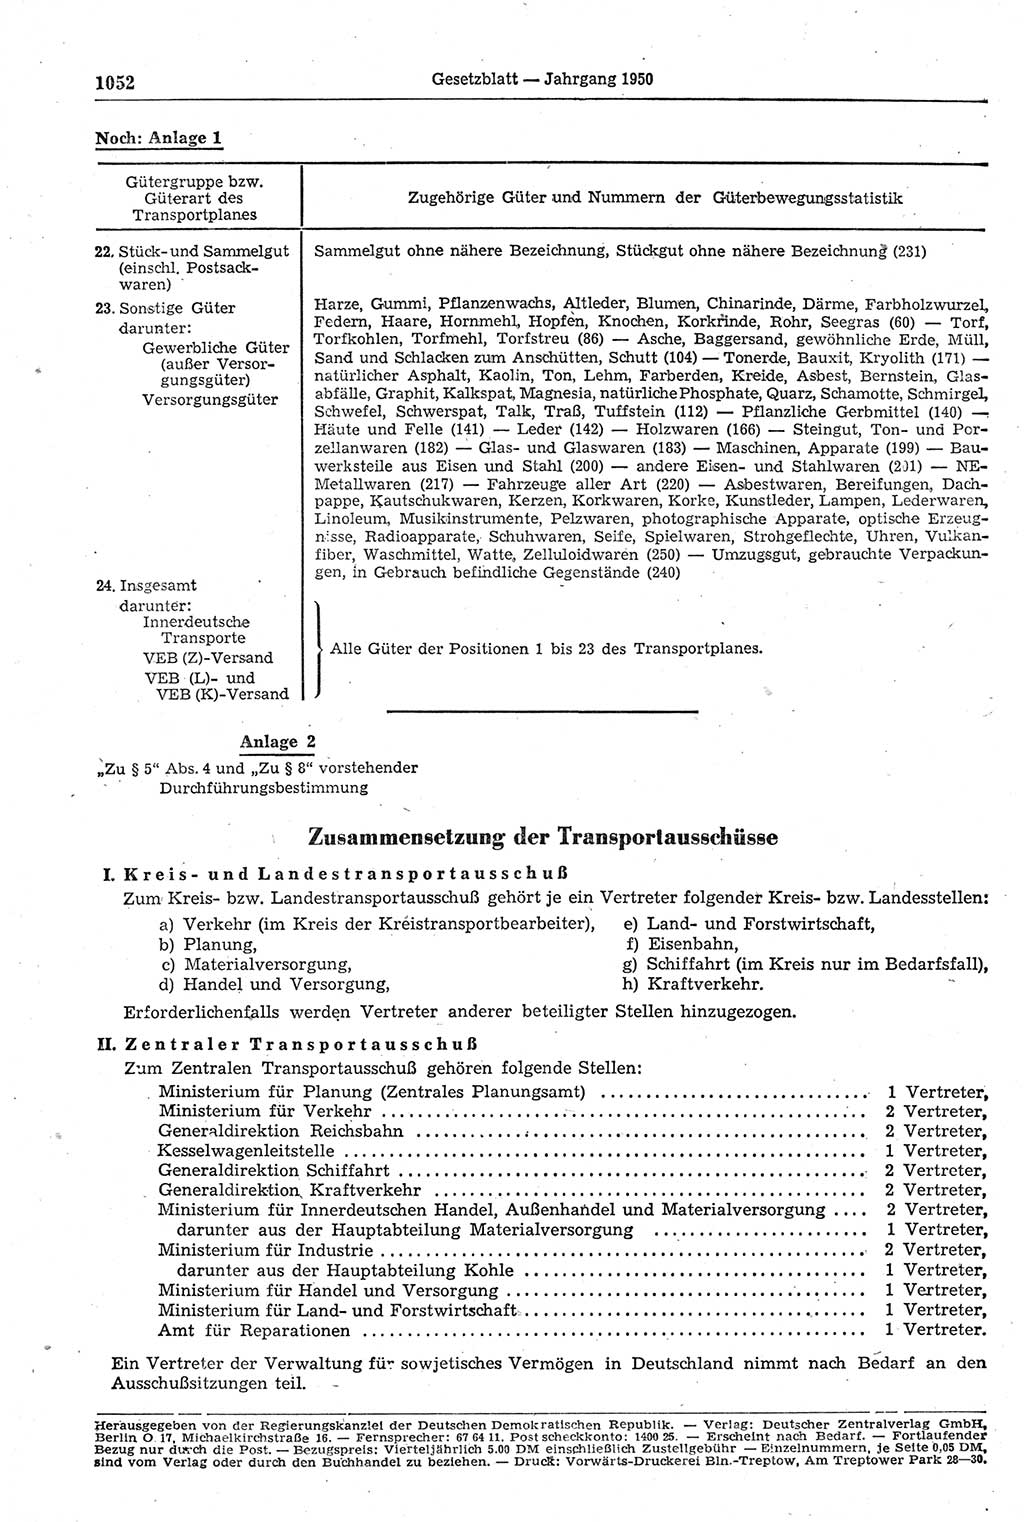 Gesetzblatt (GBl.) der Deutschen Demokratischen Republik (DDR) 1950, Seite 1052 (GBl. DDR 1950, S. 1052)